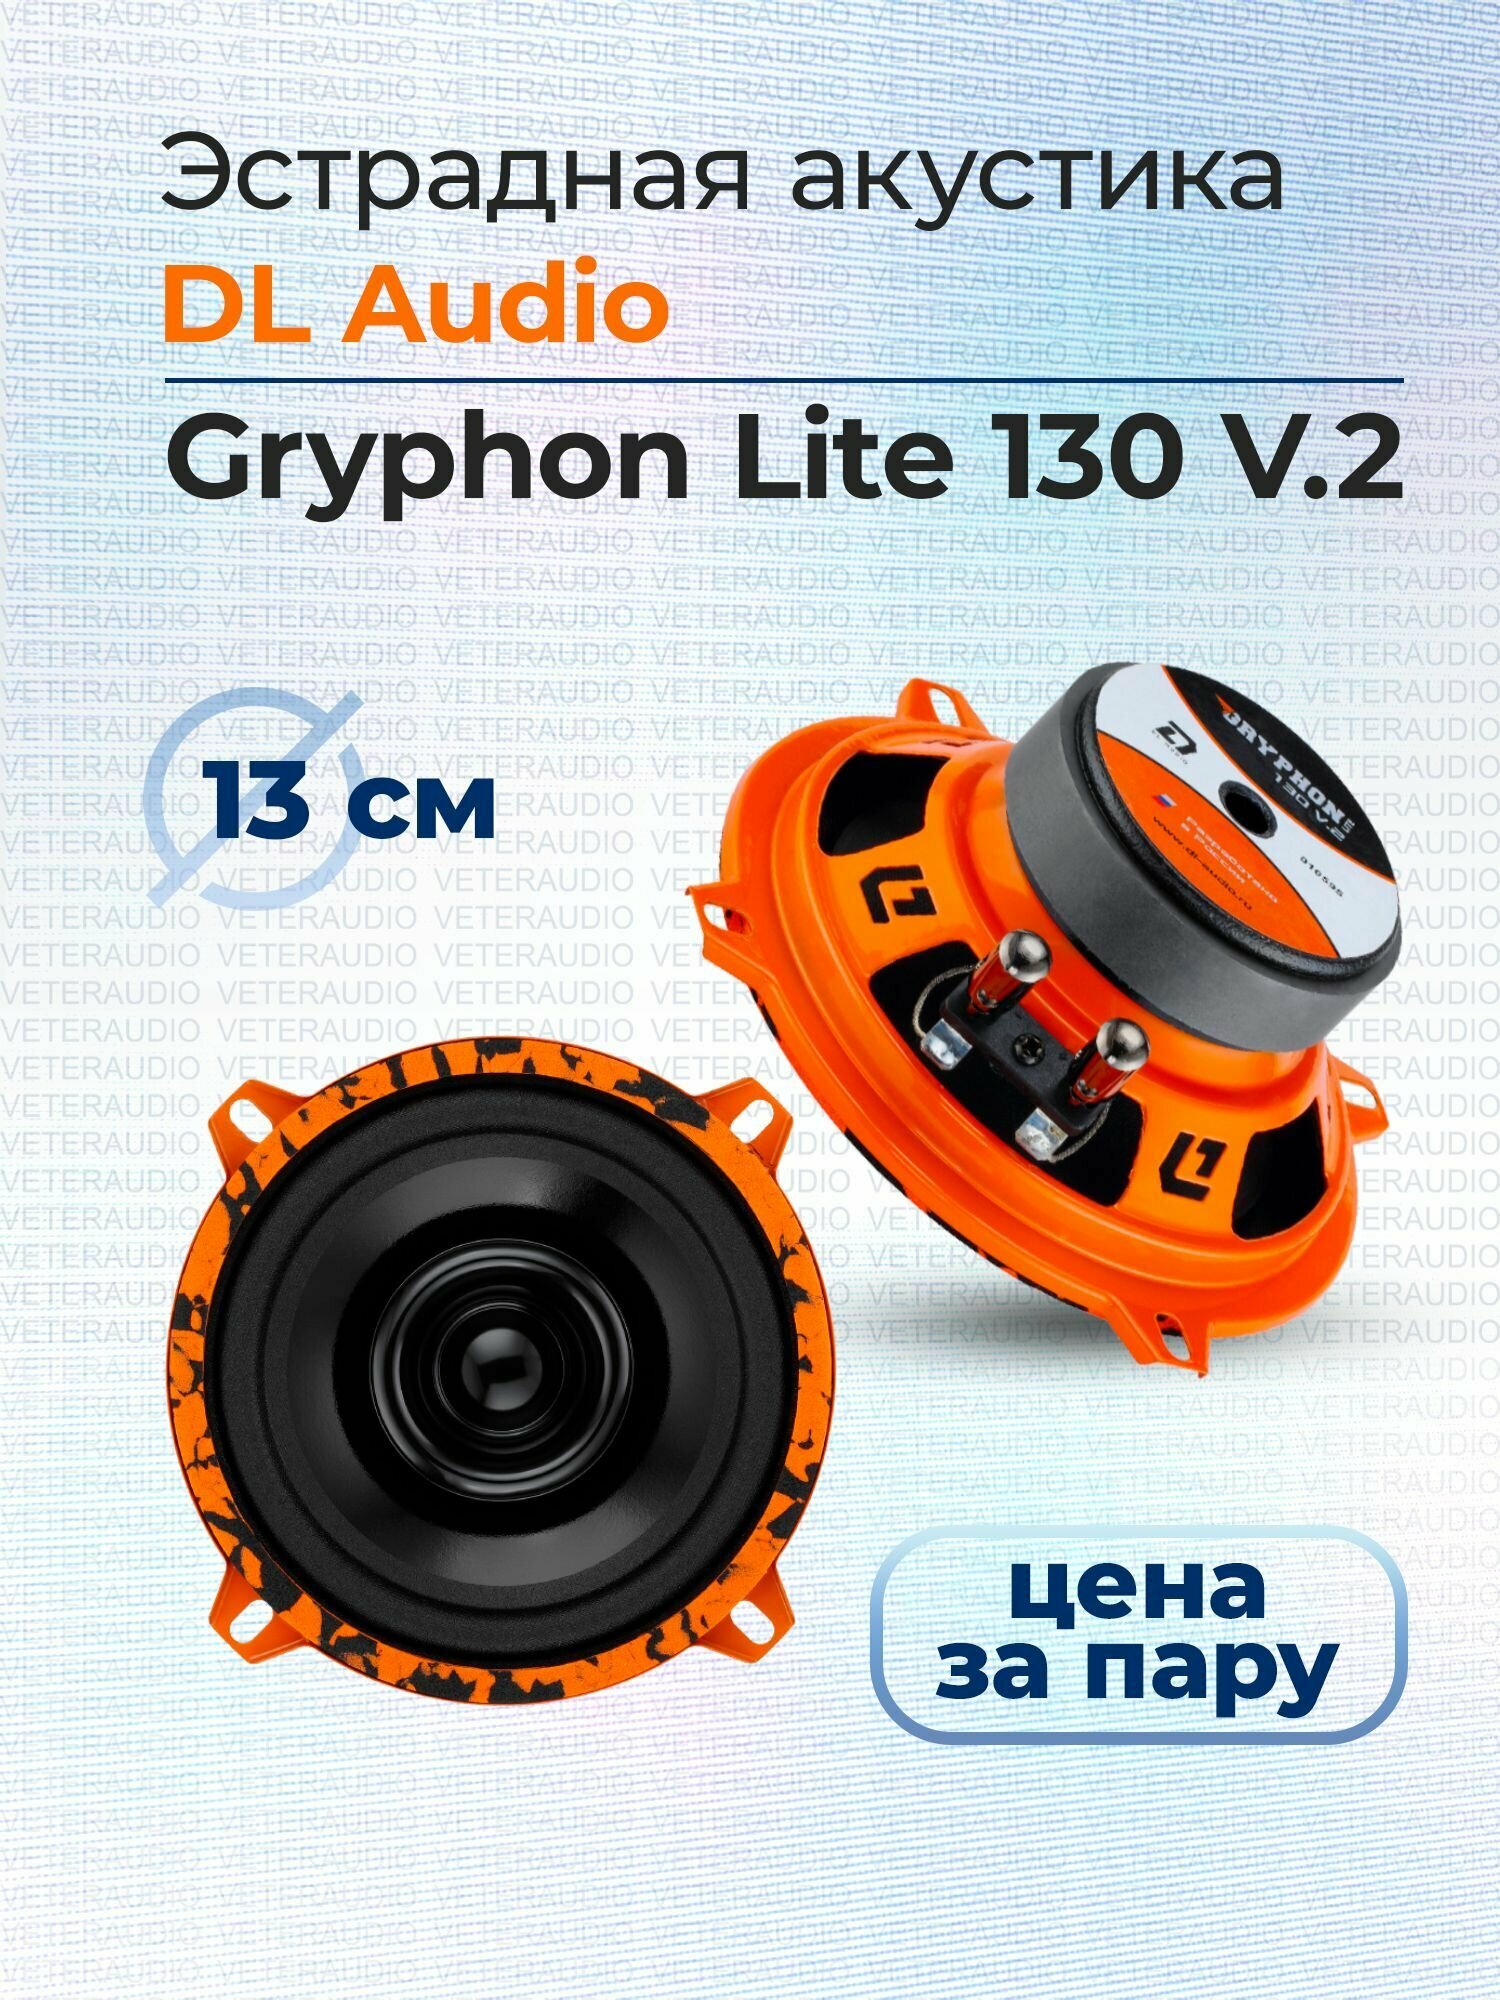 Эстрадная акустика DL Audio Gryphon Lite 130 V.2